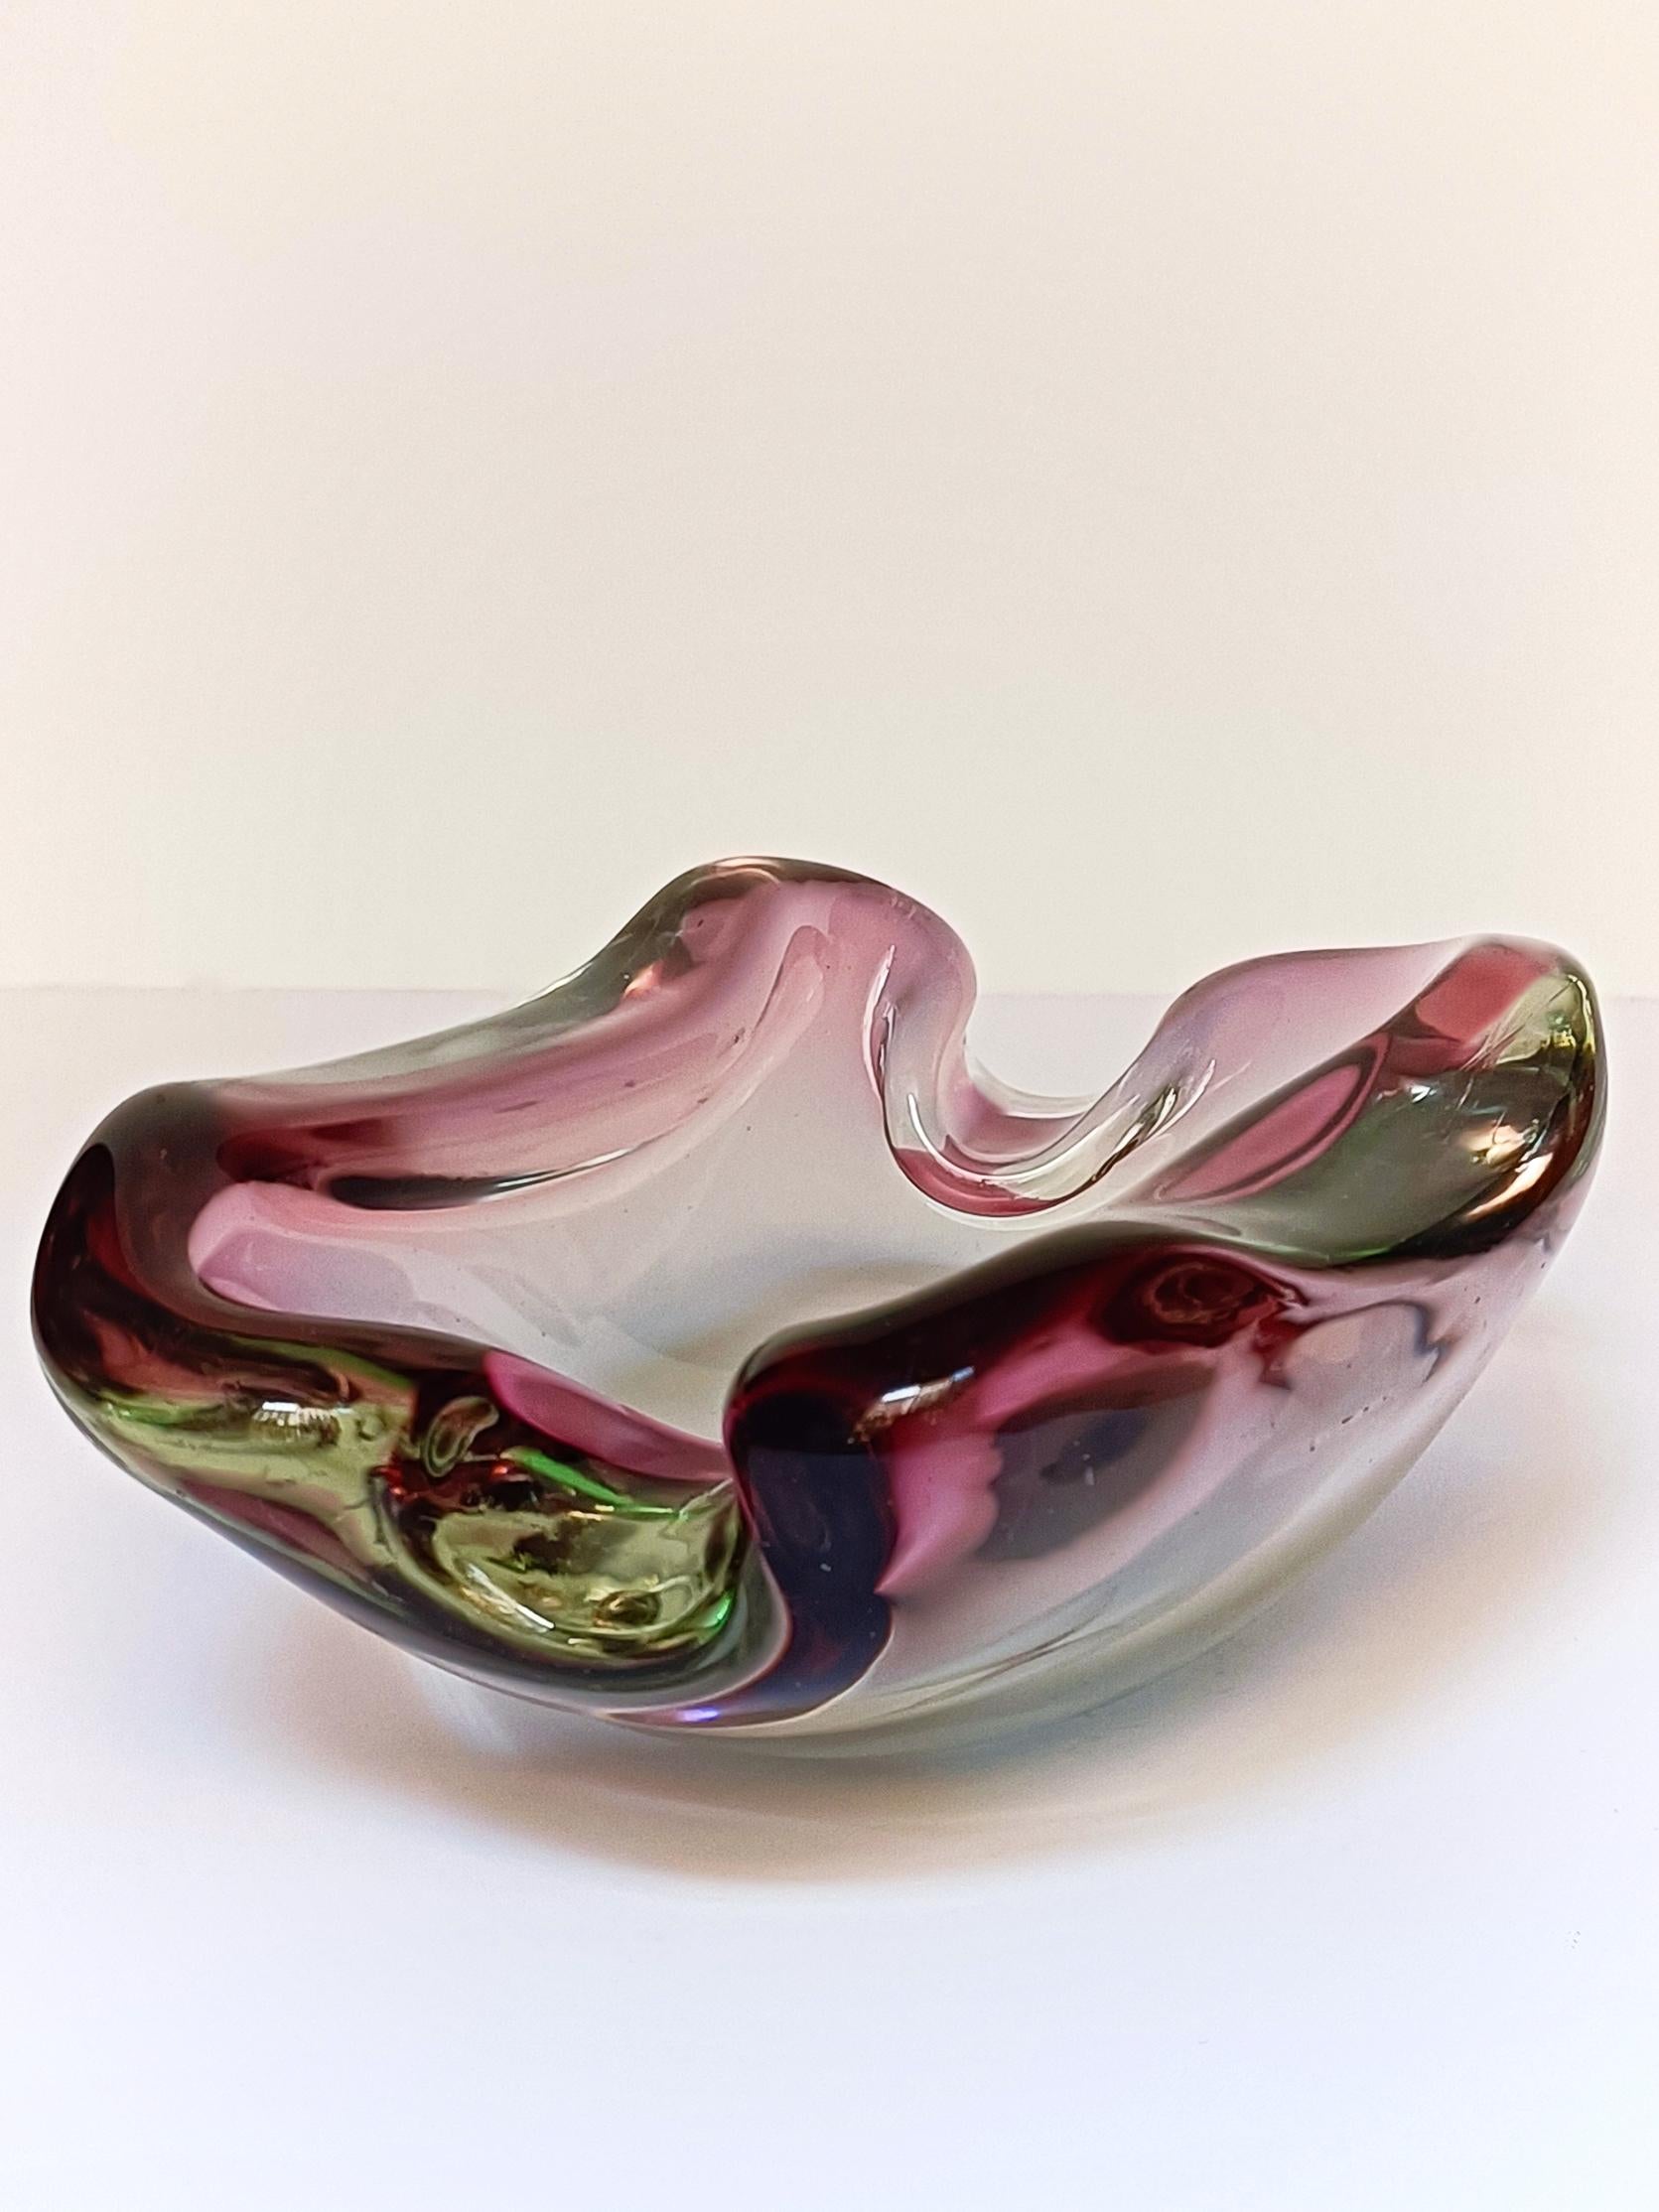 Flavio Poli für Seguso Vetri d'Arte Sommerso Murano Glass Schale, Italien, 1950er Jahre (Mitte des 20. Jahrhunderts)